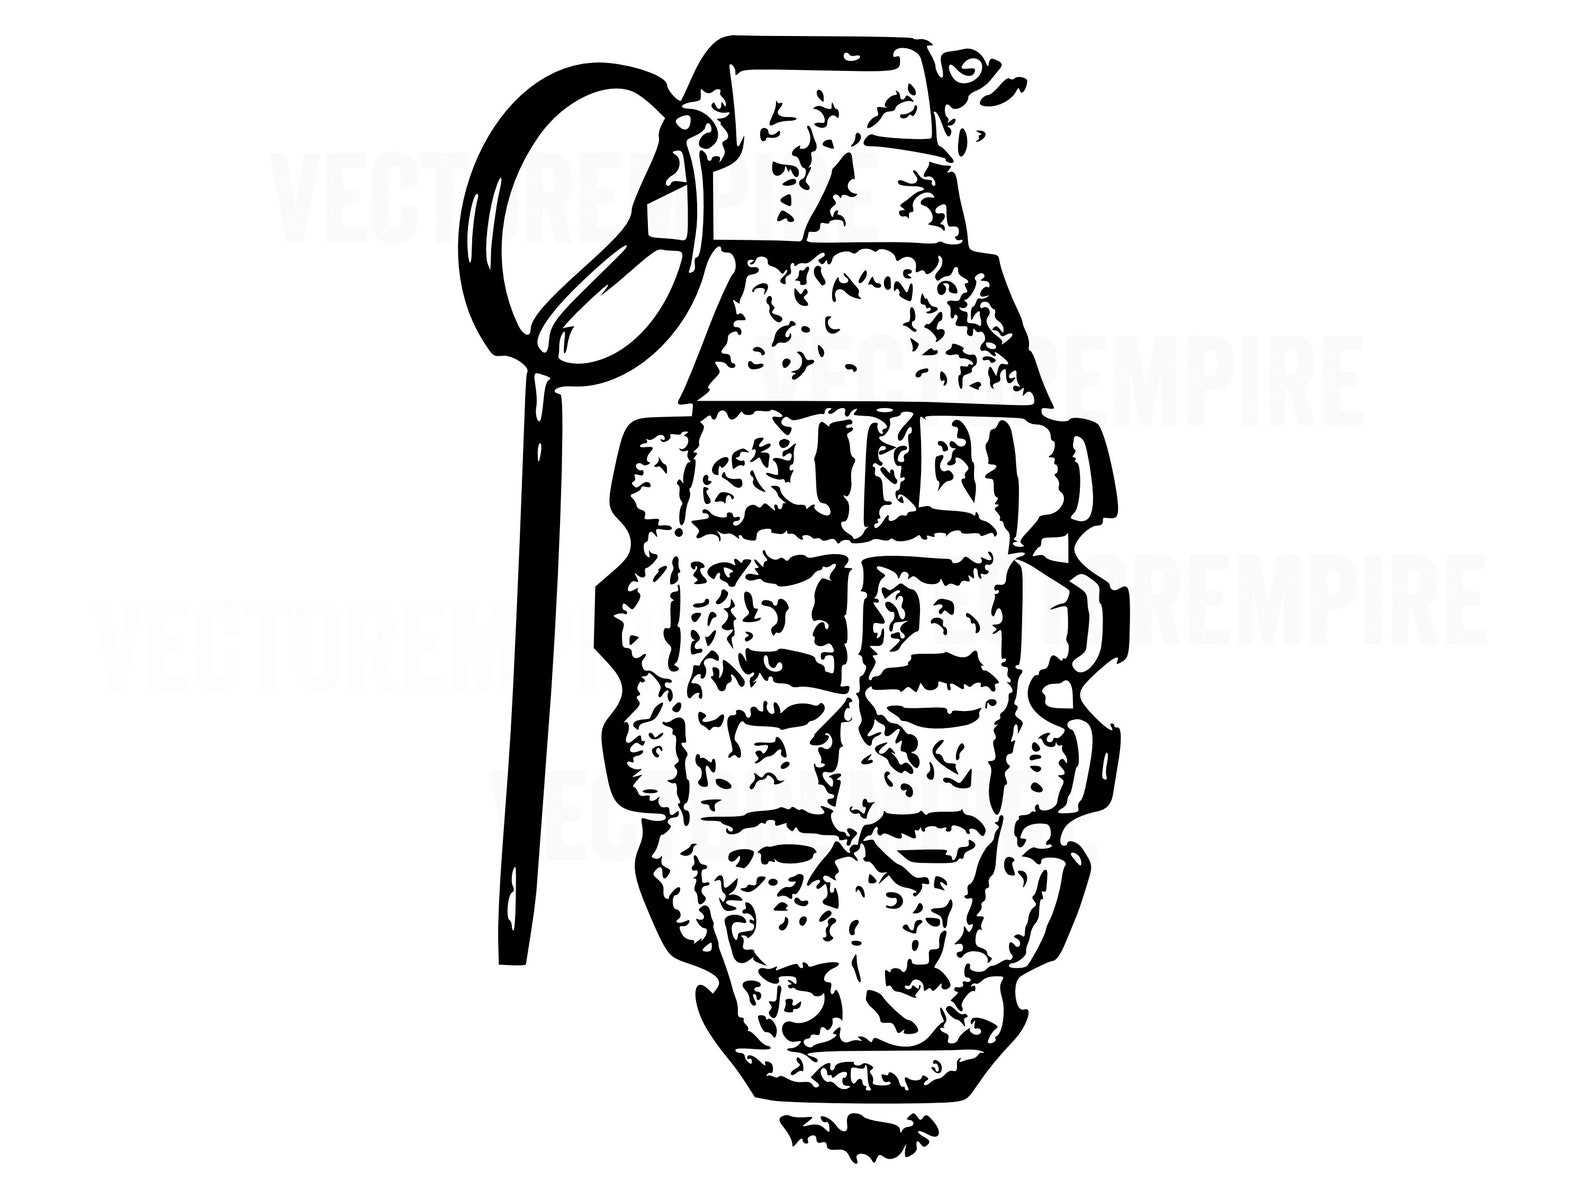 Grenade SVG Bomb SVG Hand Grenade Clip Art Grenade EPS File Explosion ...